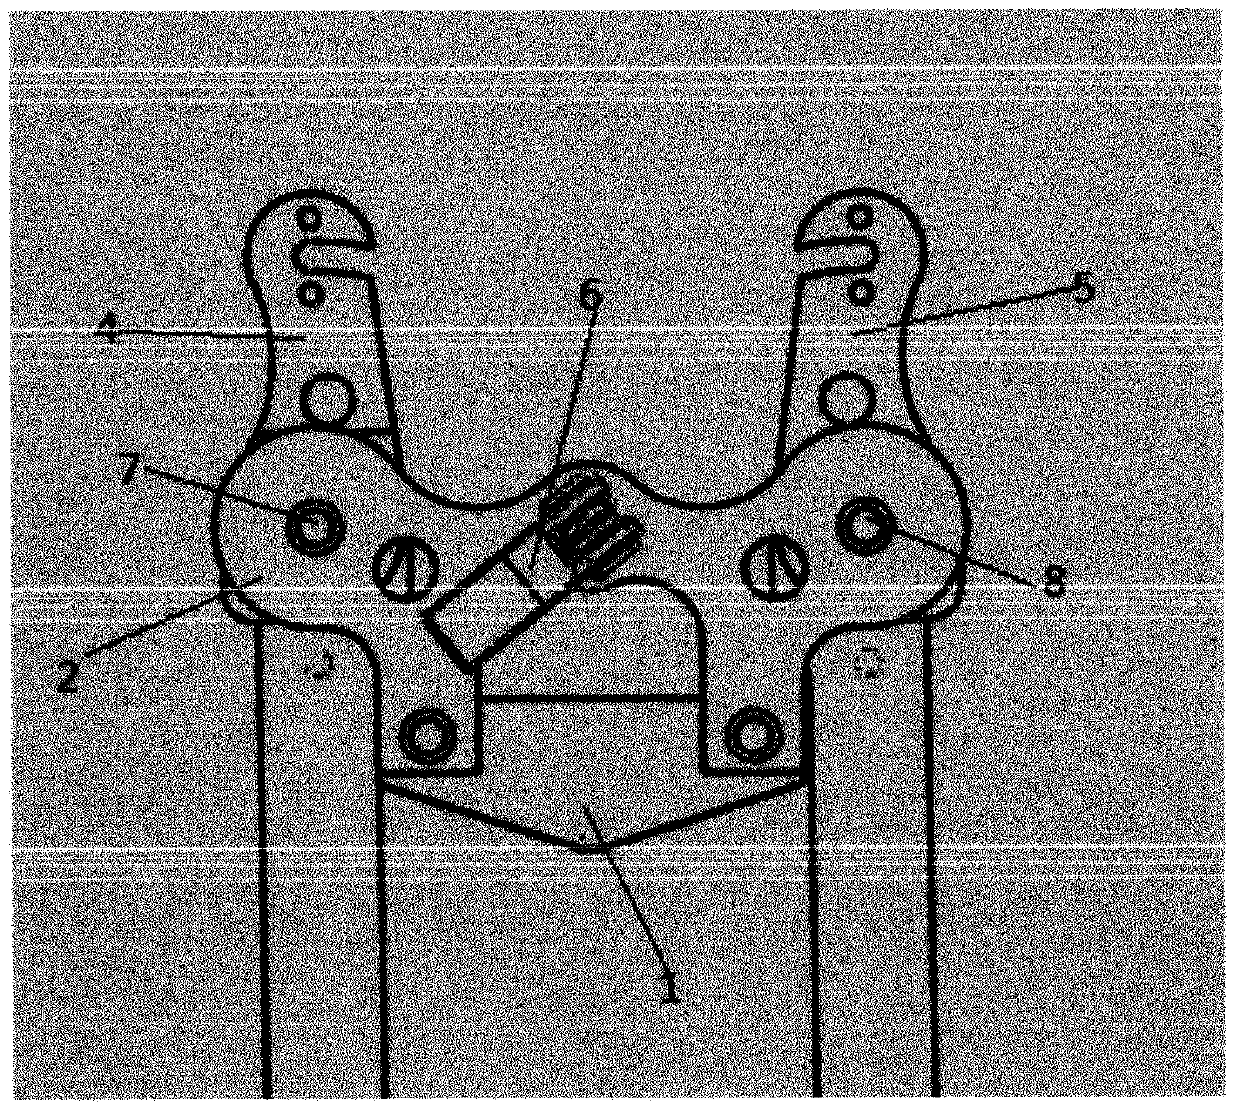 Bicycle handle folding mechanism